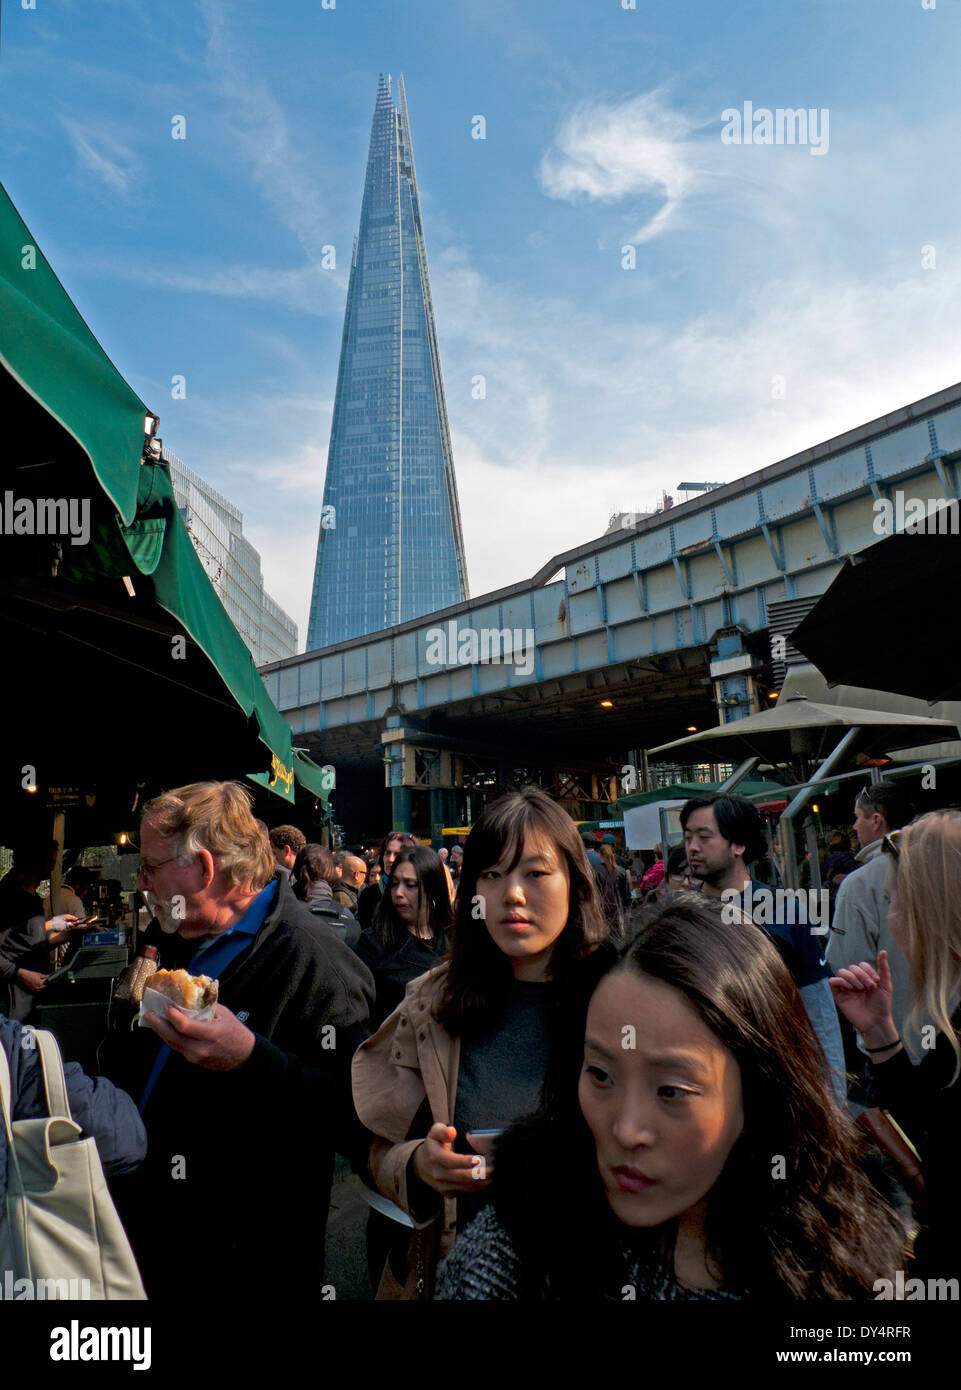 Asiatische Touristen Borough Market und Blick auf den Shard London Bridge, Southwark, London, UK KATHY DEWITT Stockfoto